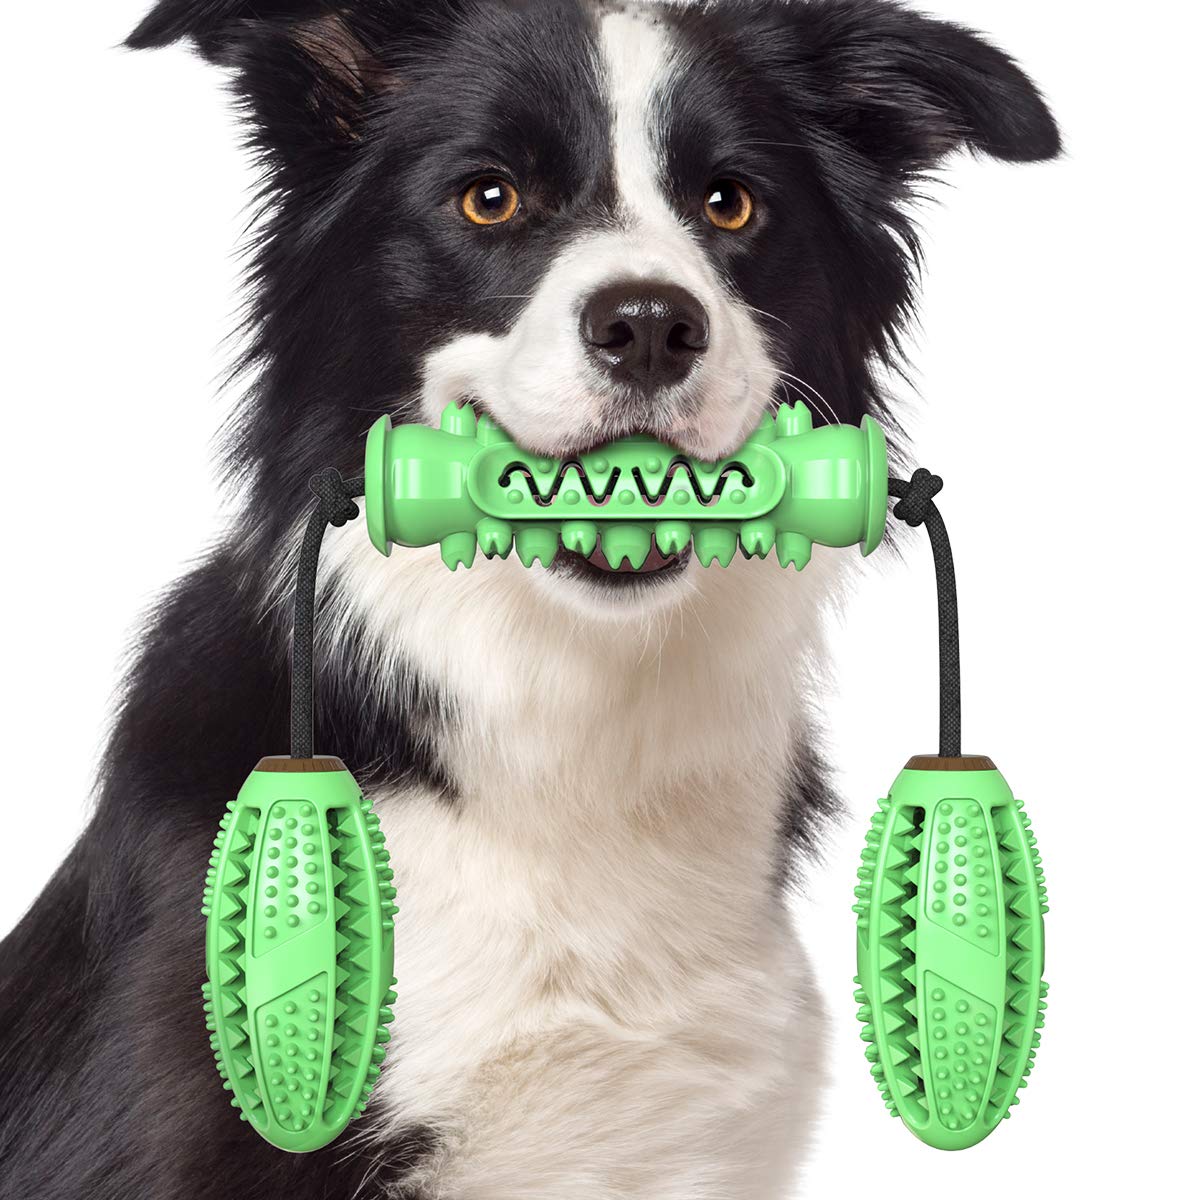 NW Haustier-Hundezahnspielzeug-Set, Hantel, Molar-Ball, Kauspielzeug, saubere Zähne, Zahngesundheit, lindert Angsttraining, Beweglichkeit, Lebensmittel-Dosierung, Tauziehen,